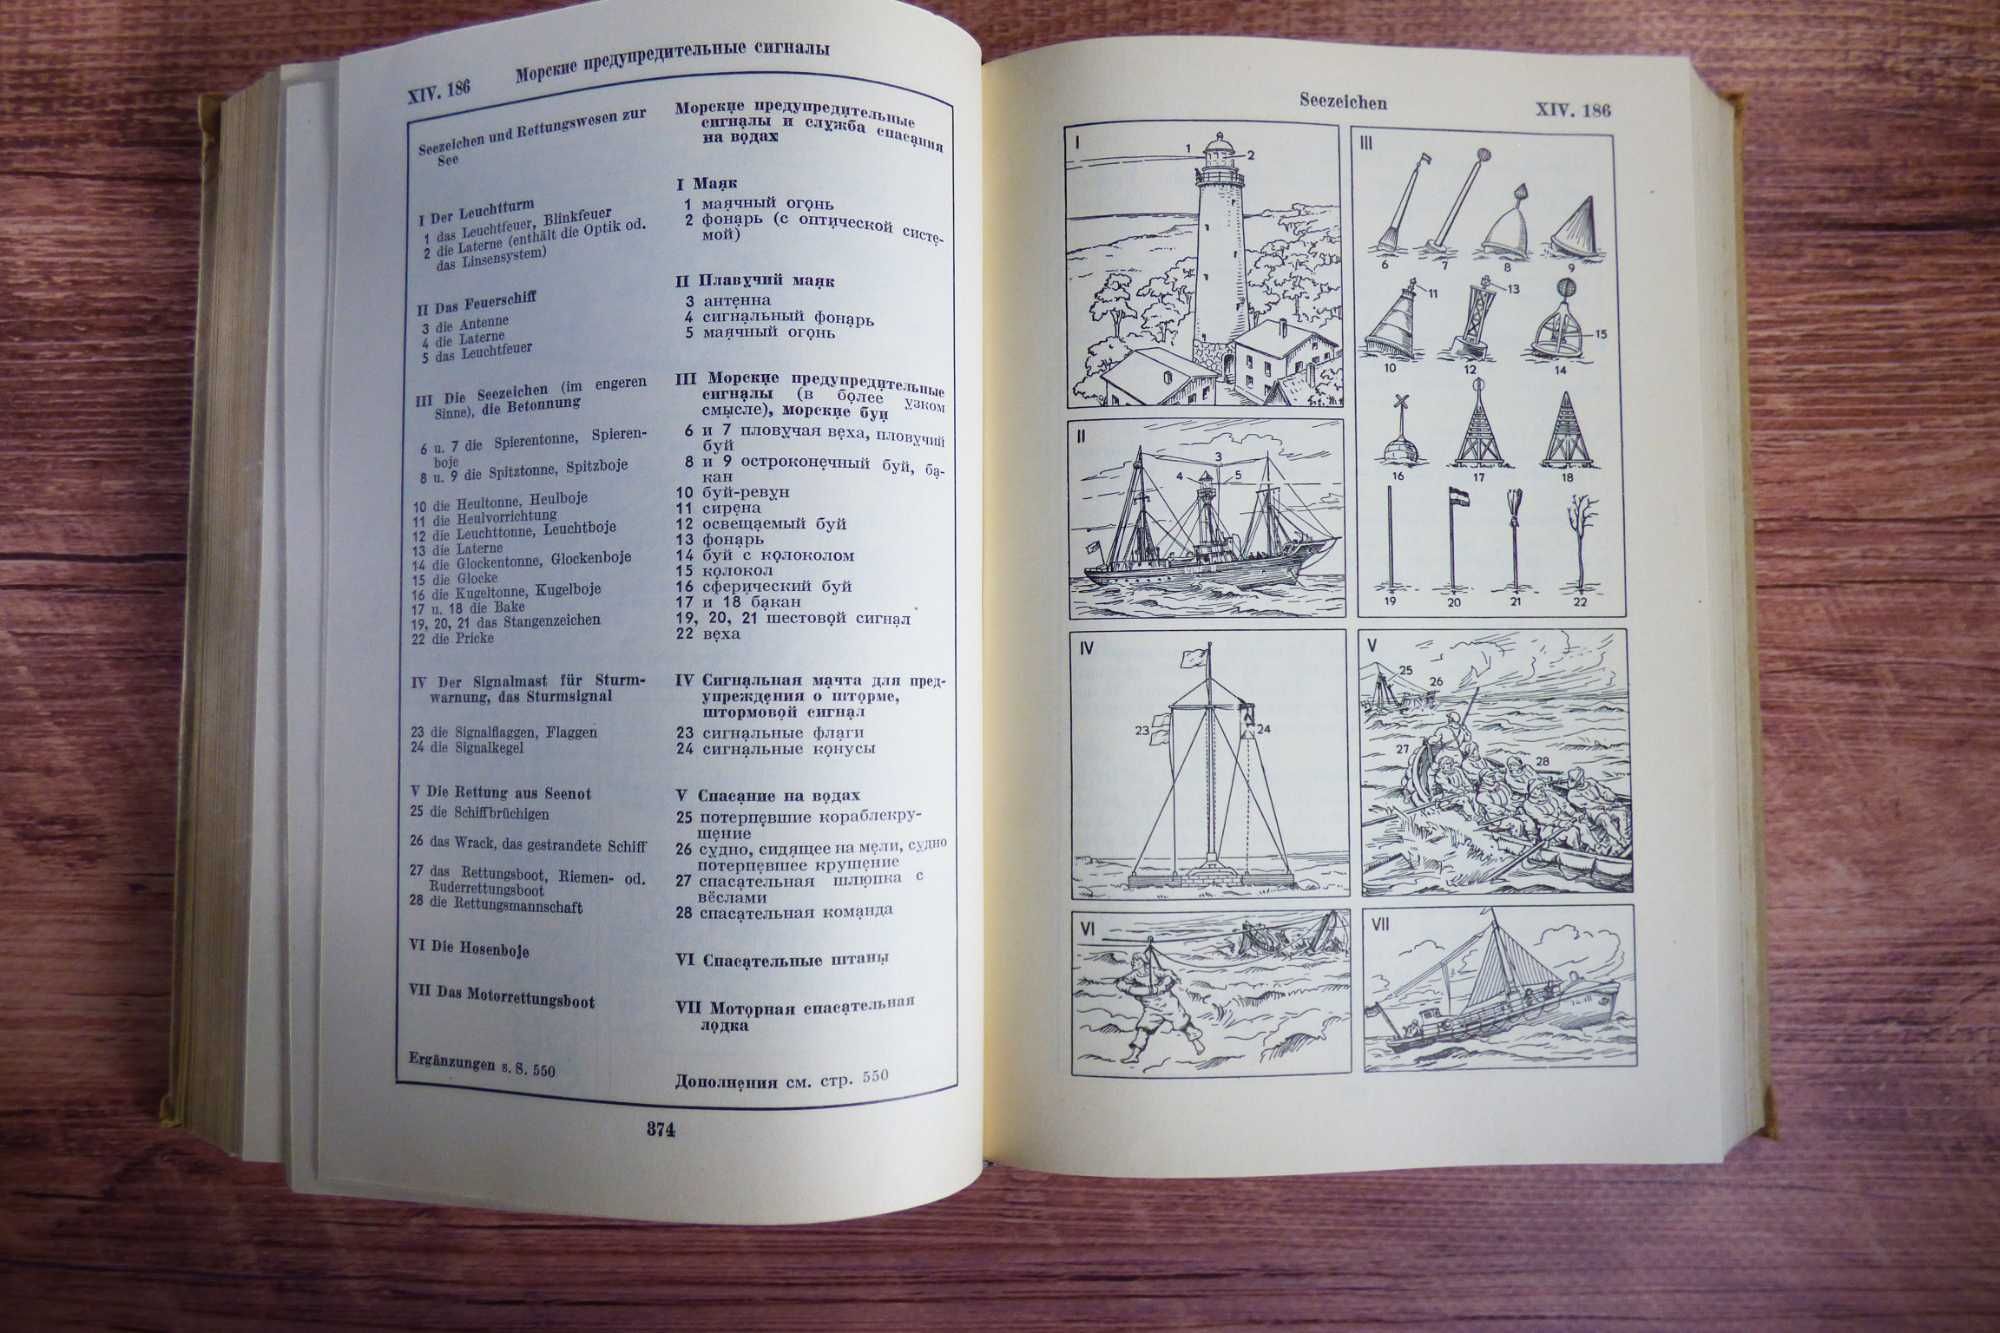 Немецкий - русский словарь иллюстрированный 59 года